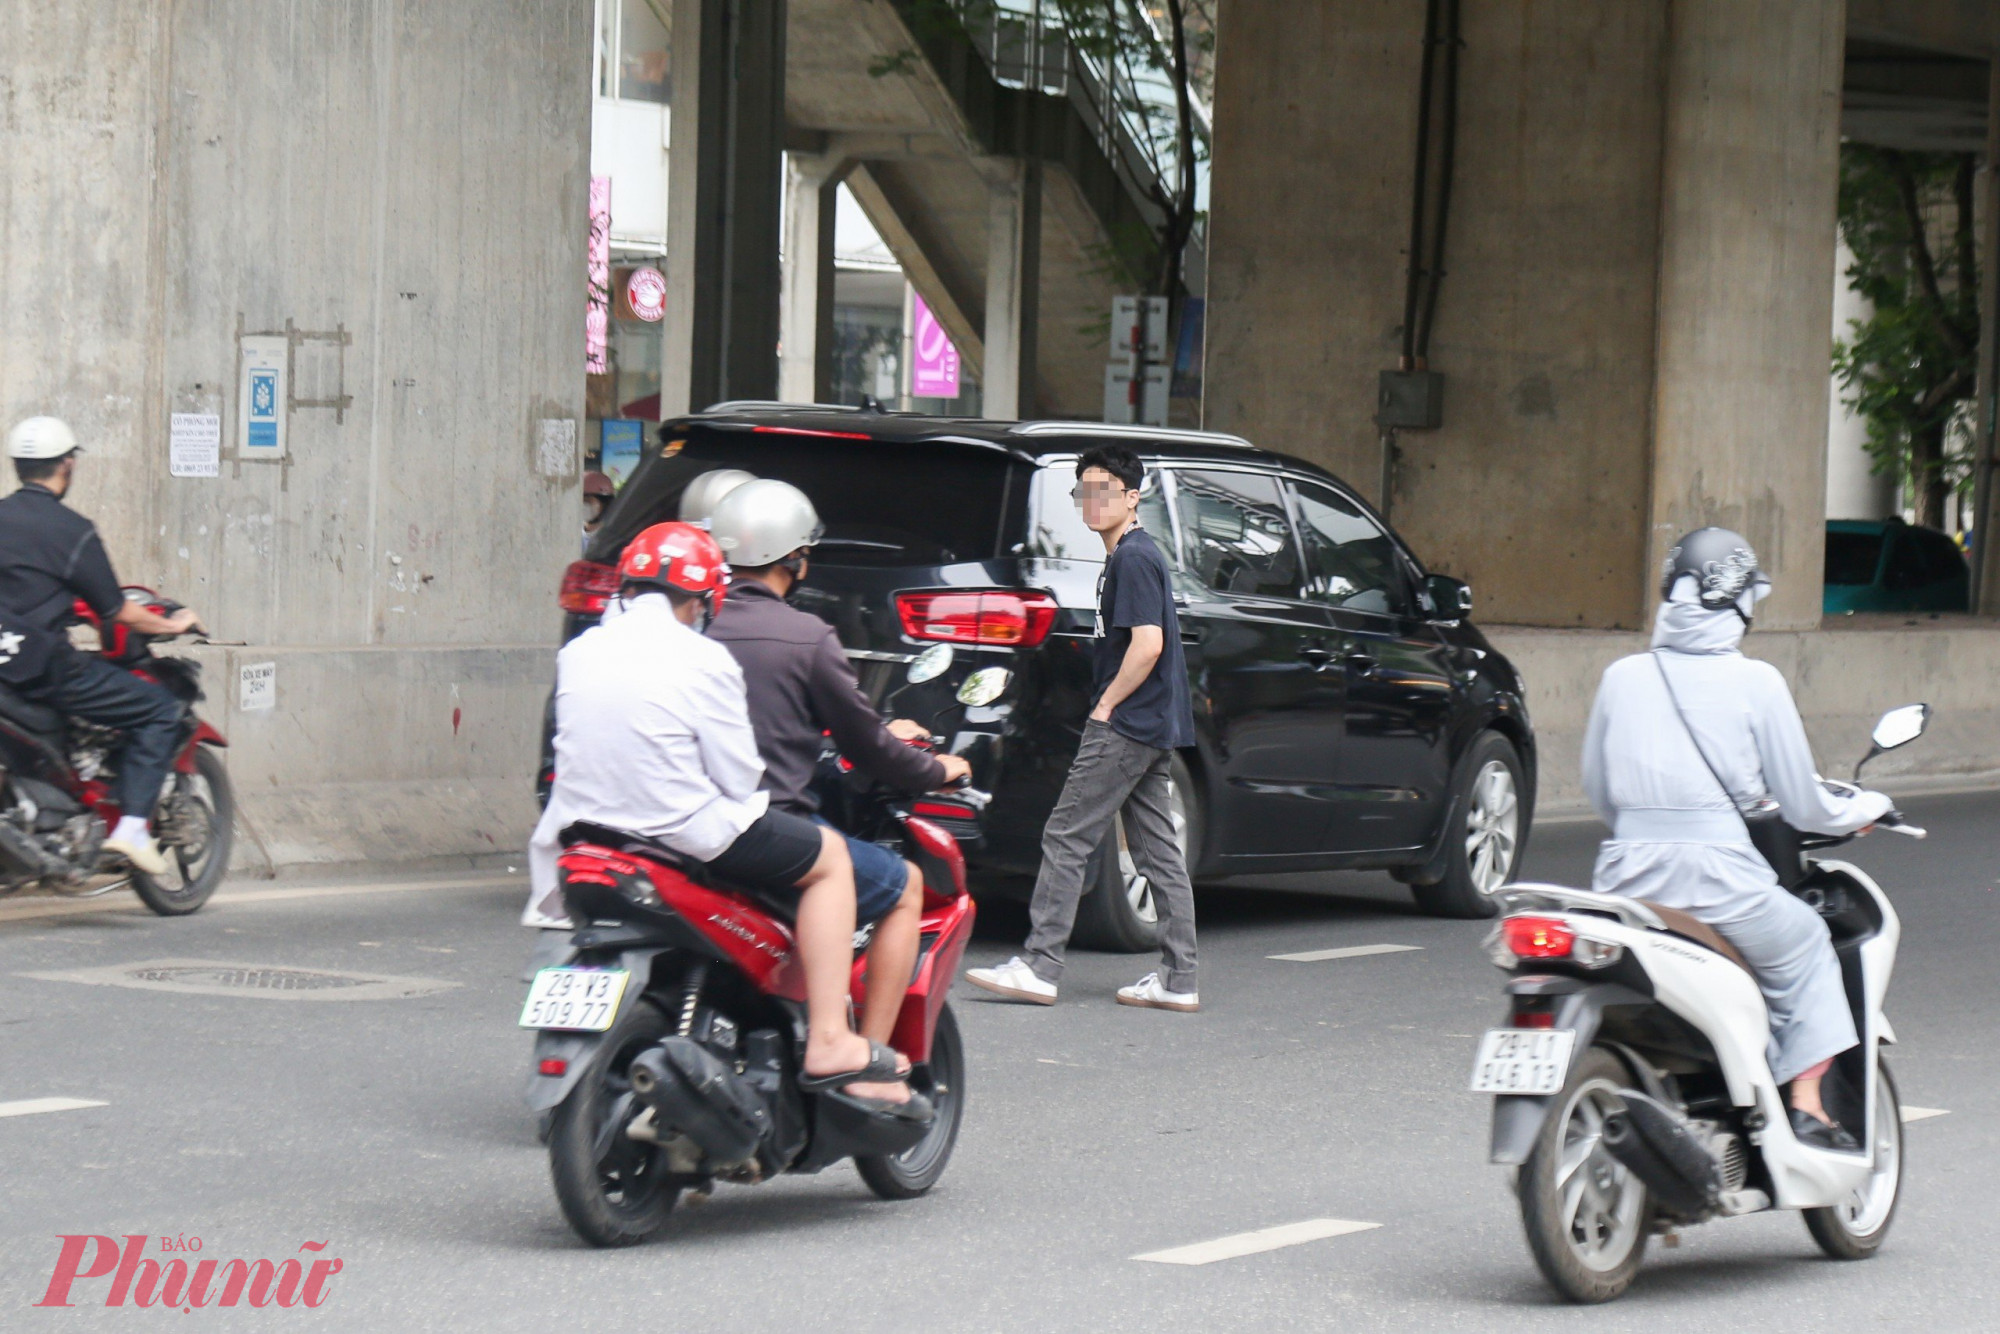 Thời gian gần đây, tình trạng người đi bộ sang đường không đúng nơi quy định diễn ra phổ biến ở Hà Nội và các thành phố lớn. Tình trạng này xảy ra nhiều tại các khu vực nút giao, ngã tư với nhiều điểm giao cắt.